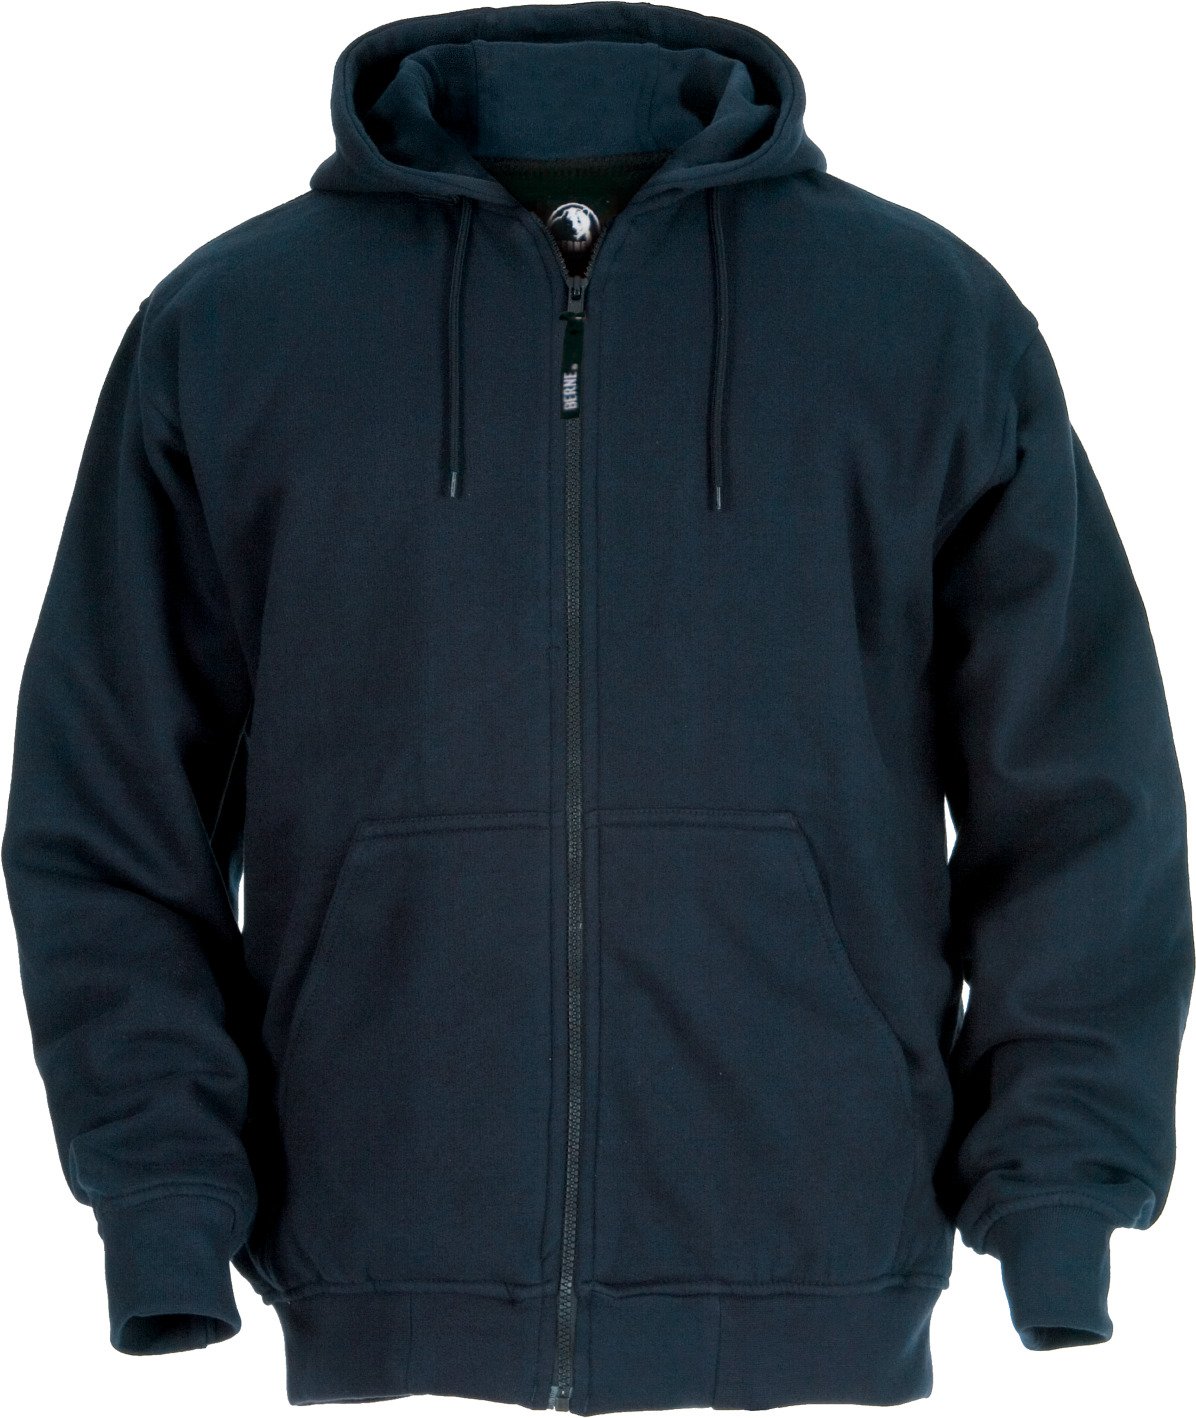 Berne Men's Thermal Lined Hooded Sweatshirt                                                                                      - view number 3